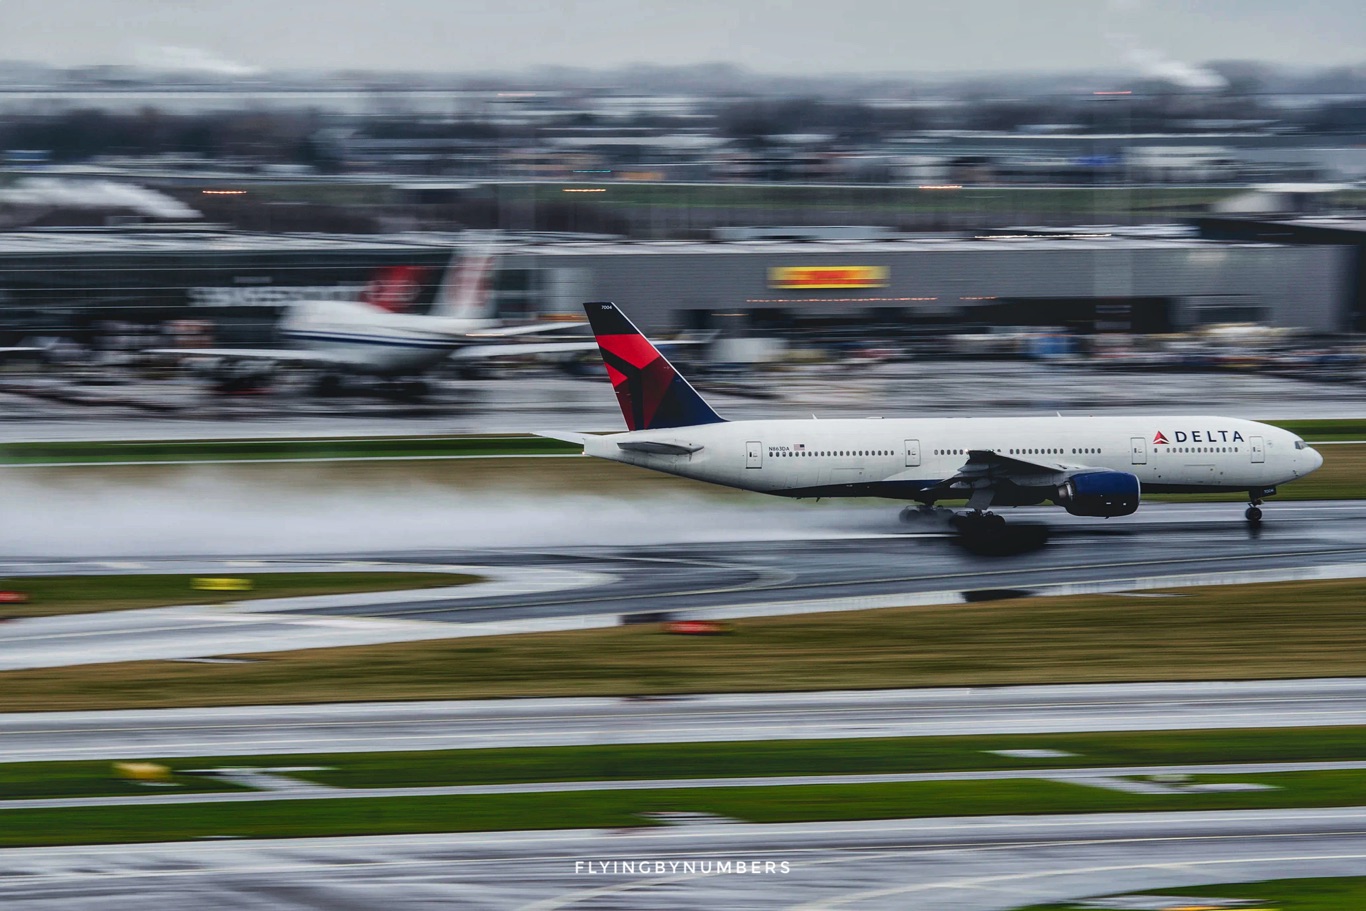 Delta aircraft landing in rain